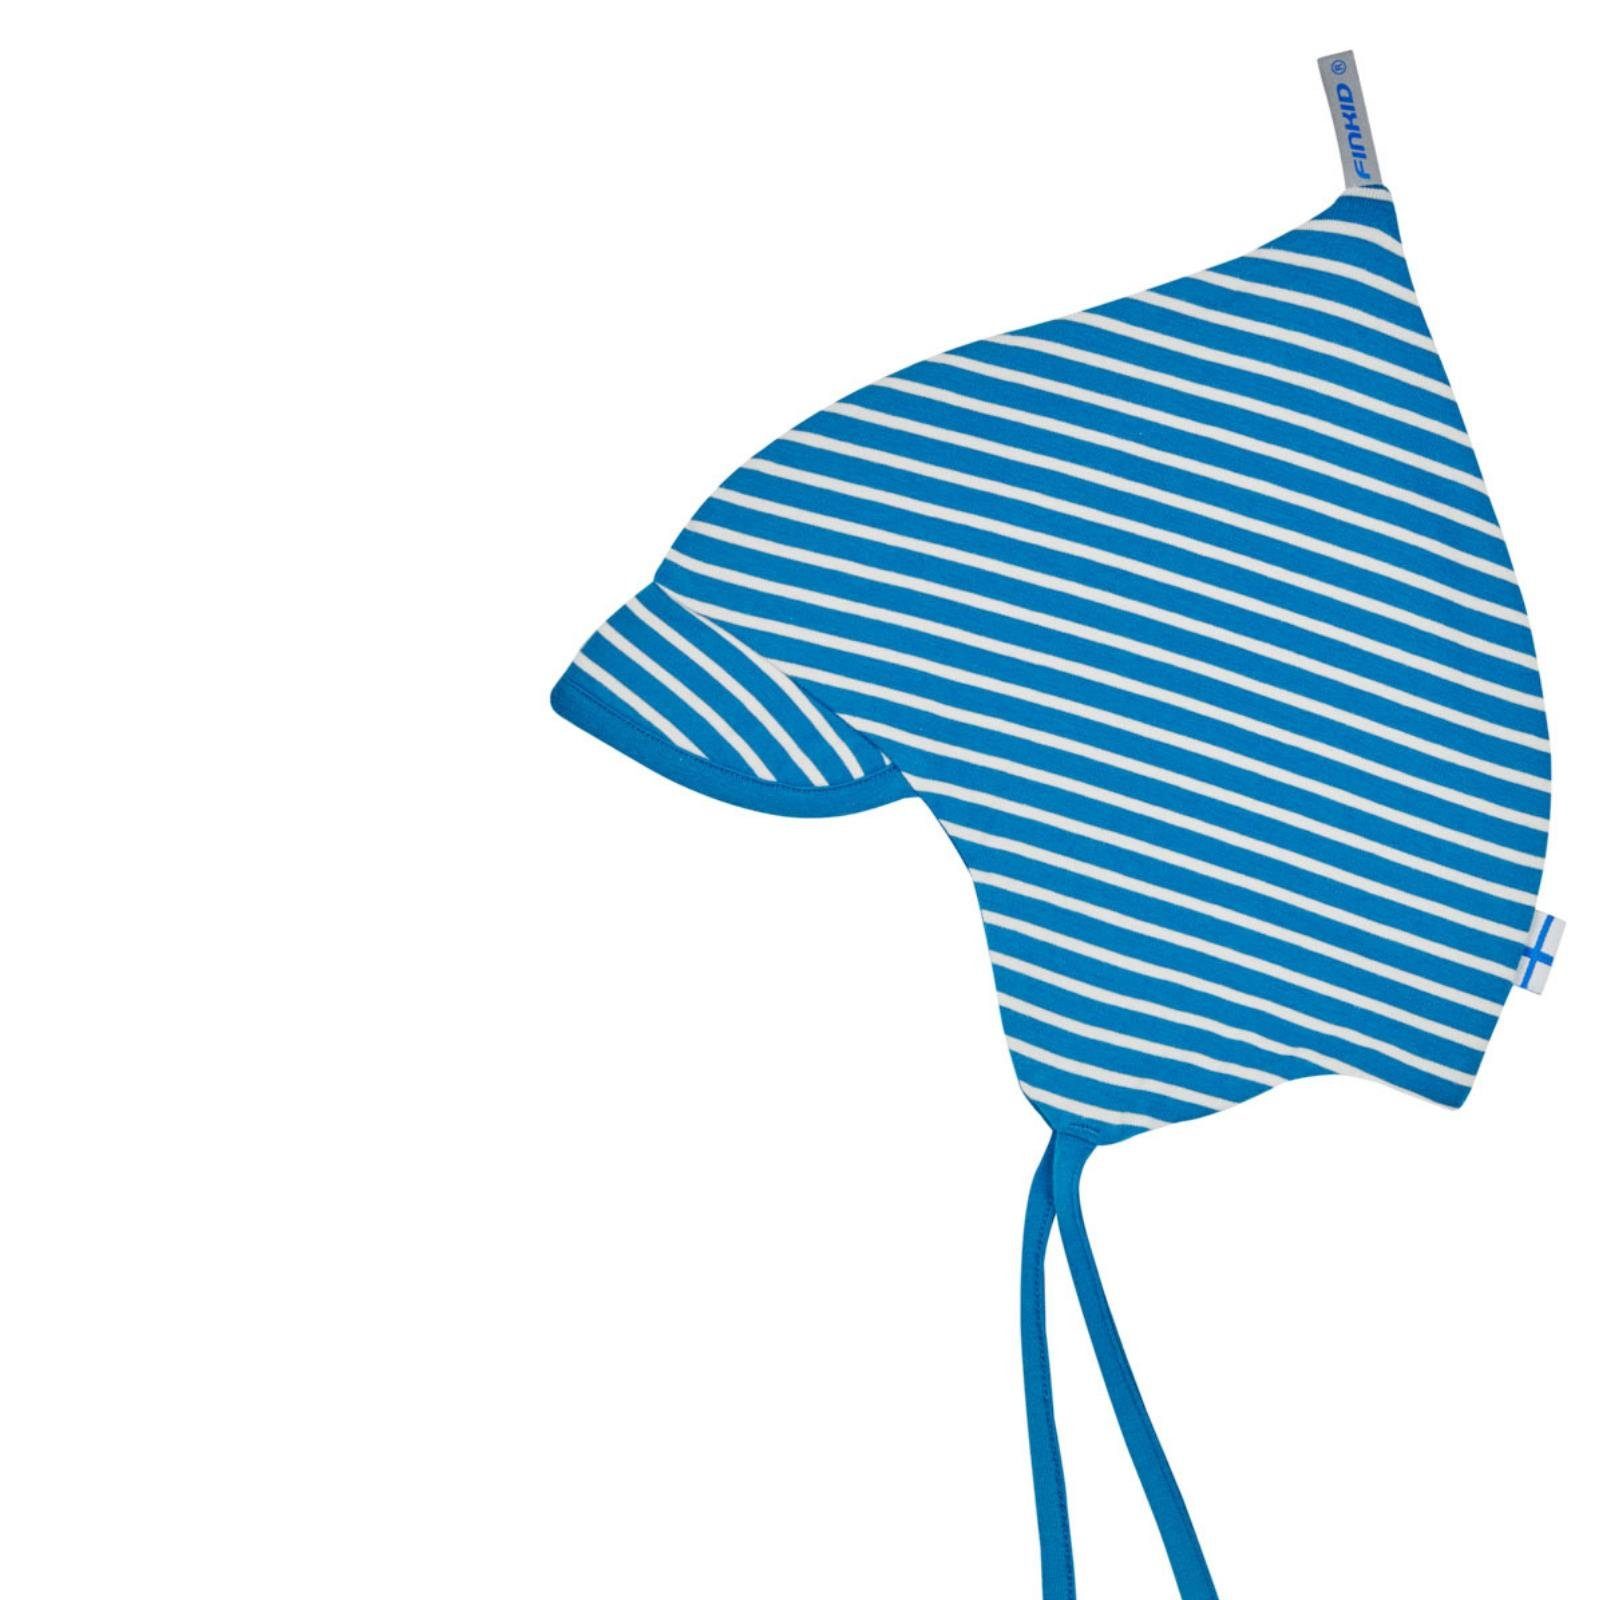 Kleinkindmütze Spring Schirmchen Popi mit Bindemütze Seaport/Offwhite Finkid - Ohren liegt den hellblau Bindemütze an Beanie Finkid eng Zipfelmütze